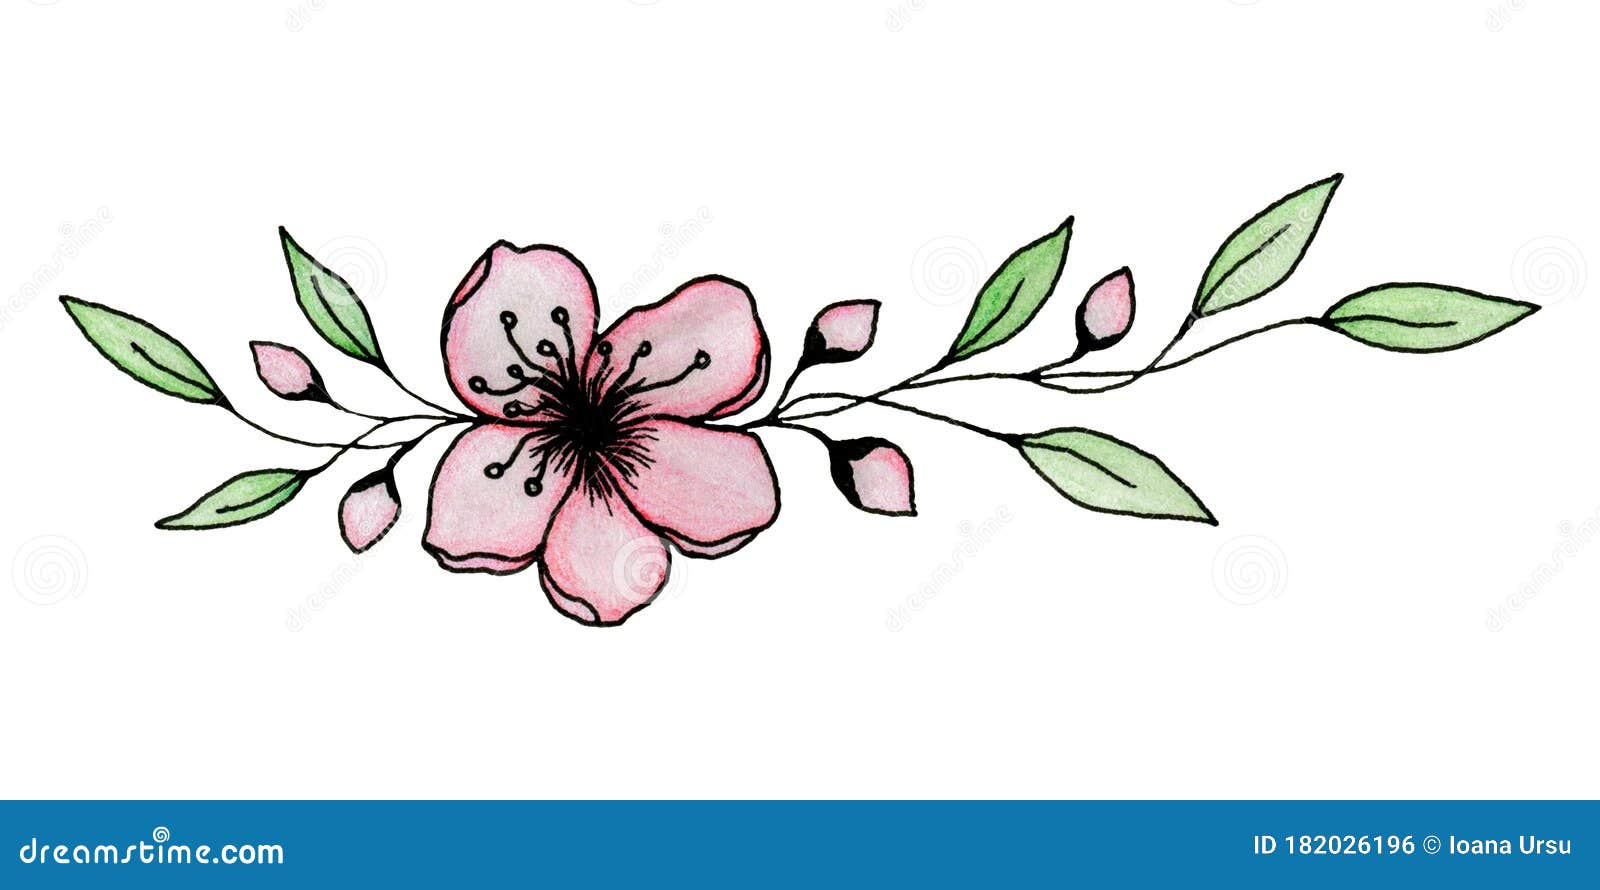 Dibujo De Tinta Y Lápiz De Sakura O Flor De Cerezo Aislado En Una  Ilustración Blanca Y Elegante De La Flor De Cerezo Stock de ilustración -  Ilustración de japonés, fondo: 182026196